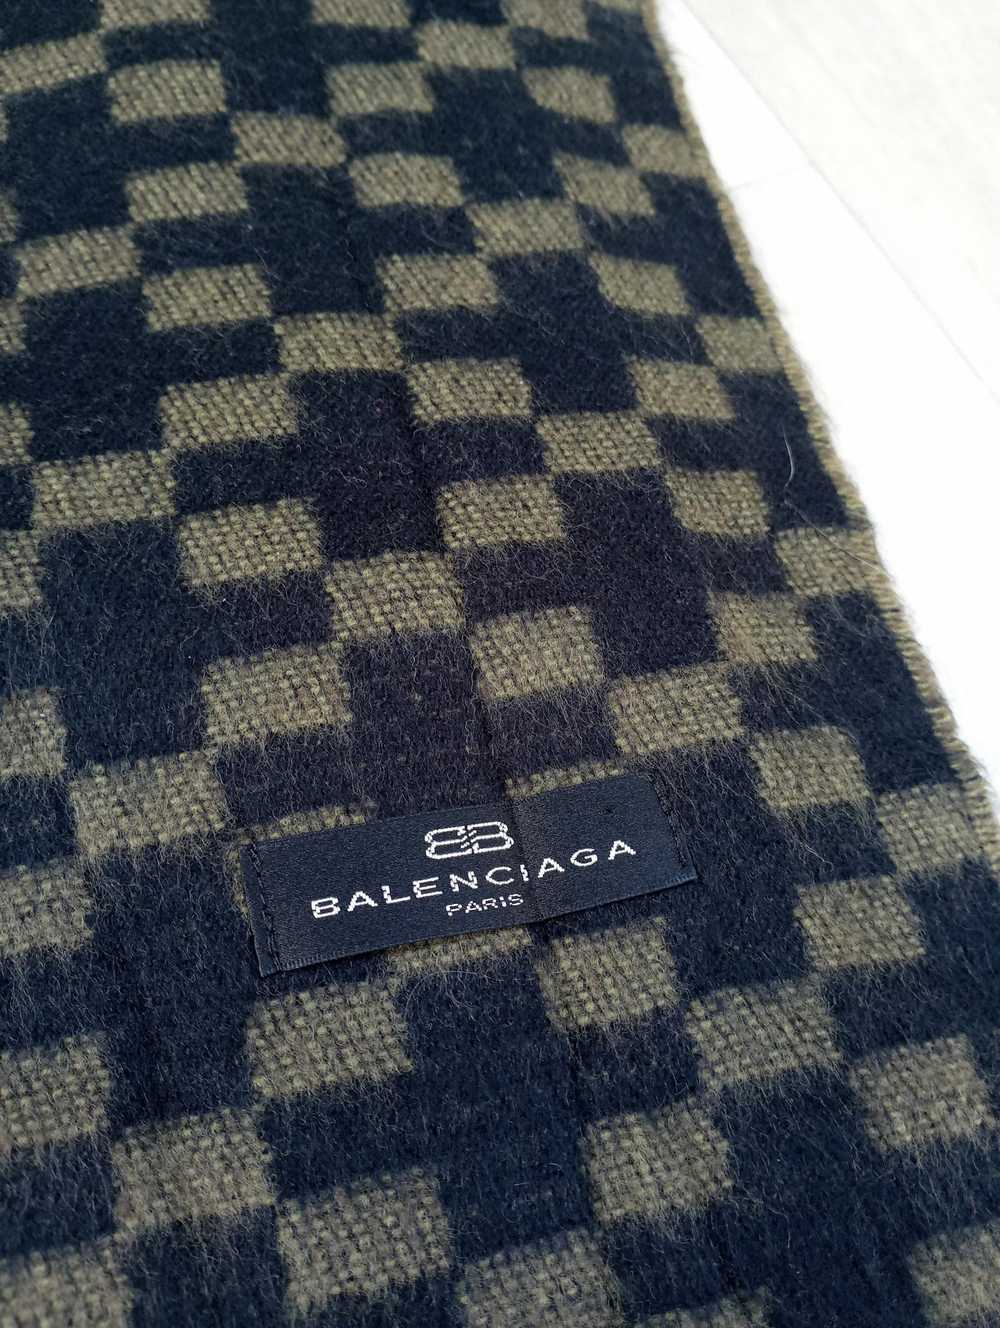 Balenciaga BALENCIAGA scarf muffler neckwear - image 4